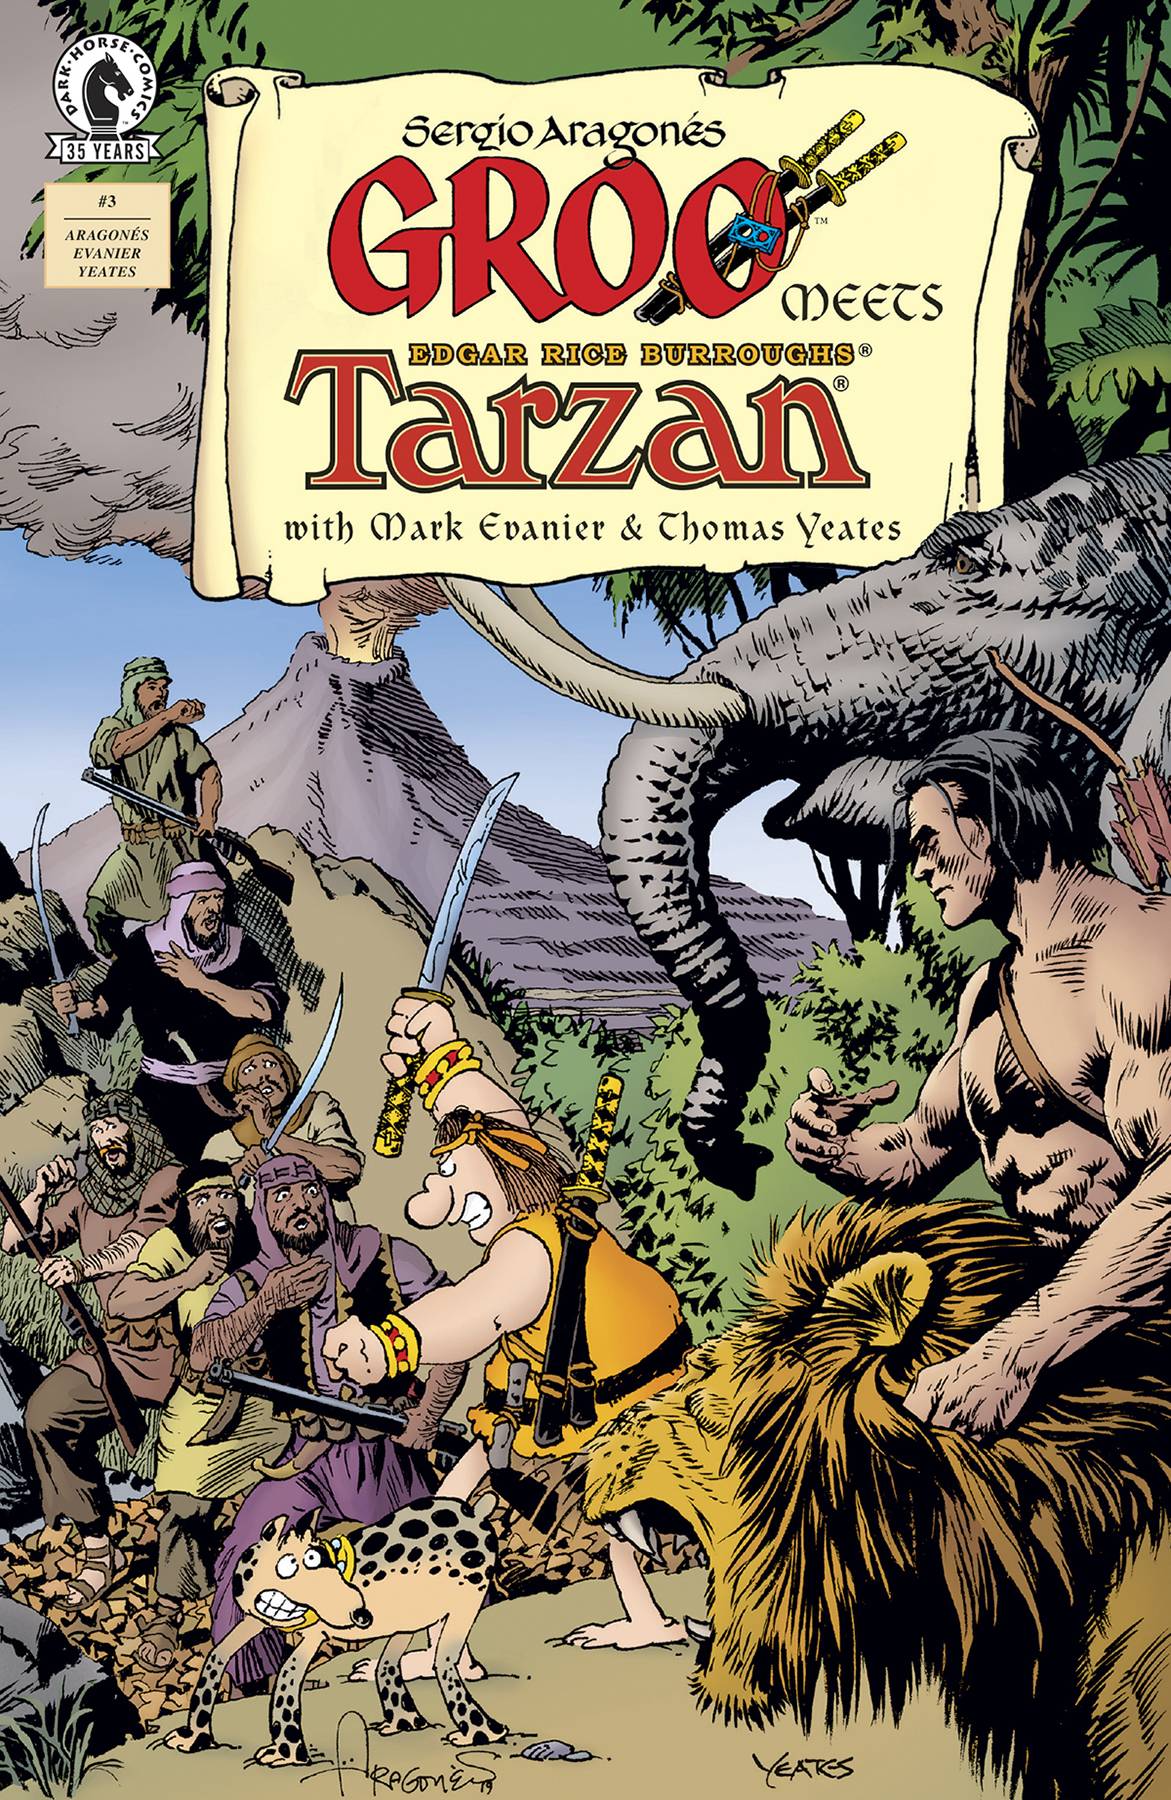 GROO MEETS TARZAN #3 (OF 4) | L.A. Mood Comics and Games